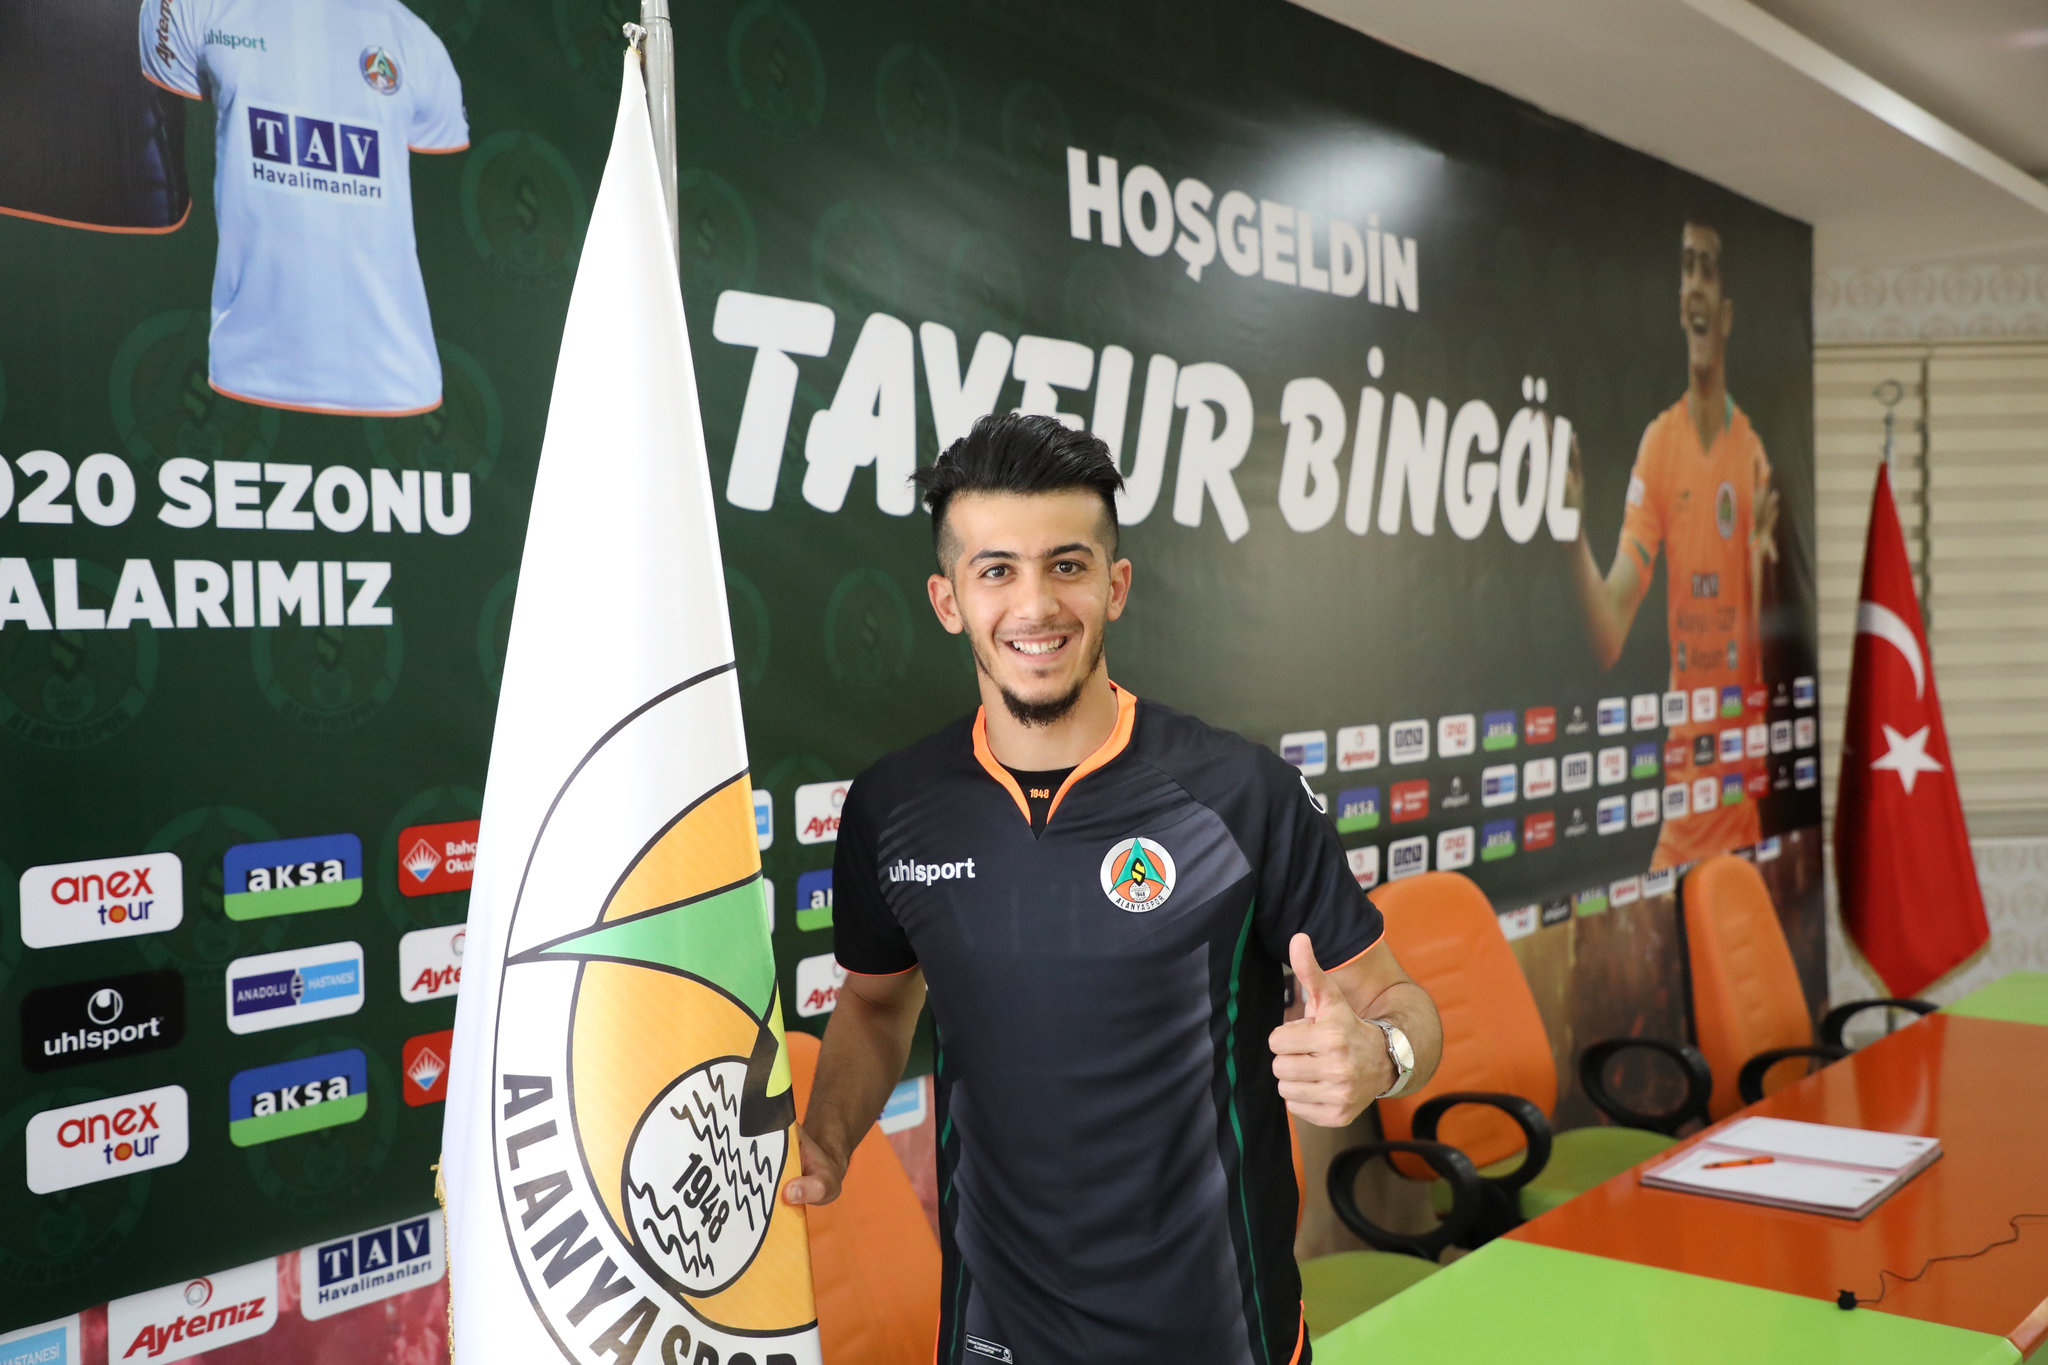 TRANSFER HABERİ: Trabzonspor’un sağ bek adayları belli oldu! Bünyamin Balcı ve Tayfur Bingöl için harekete geçildi